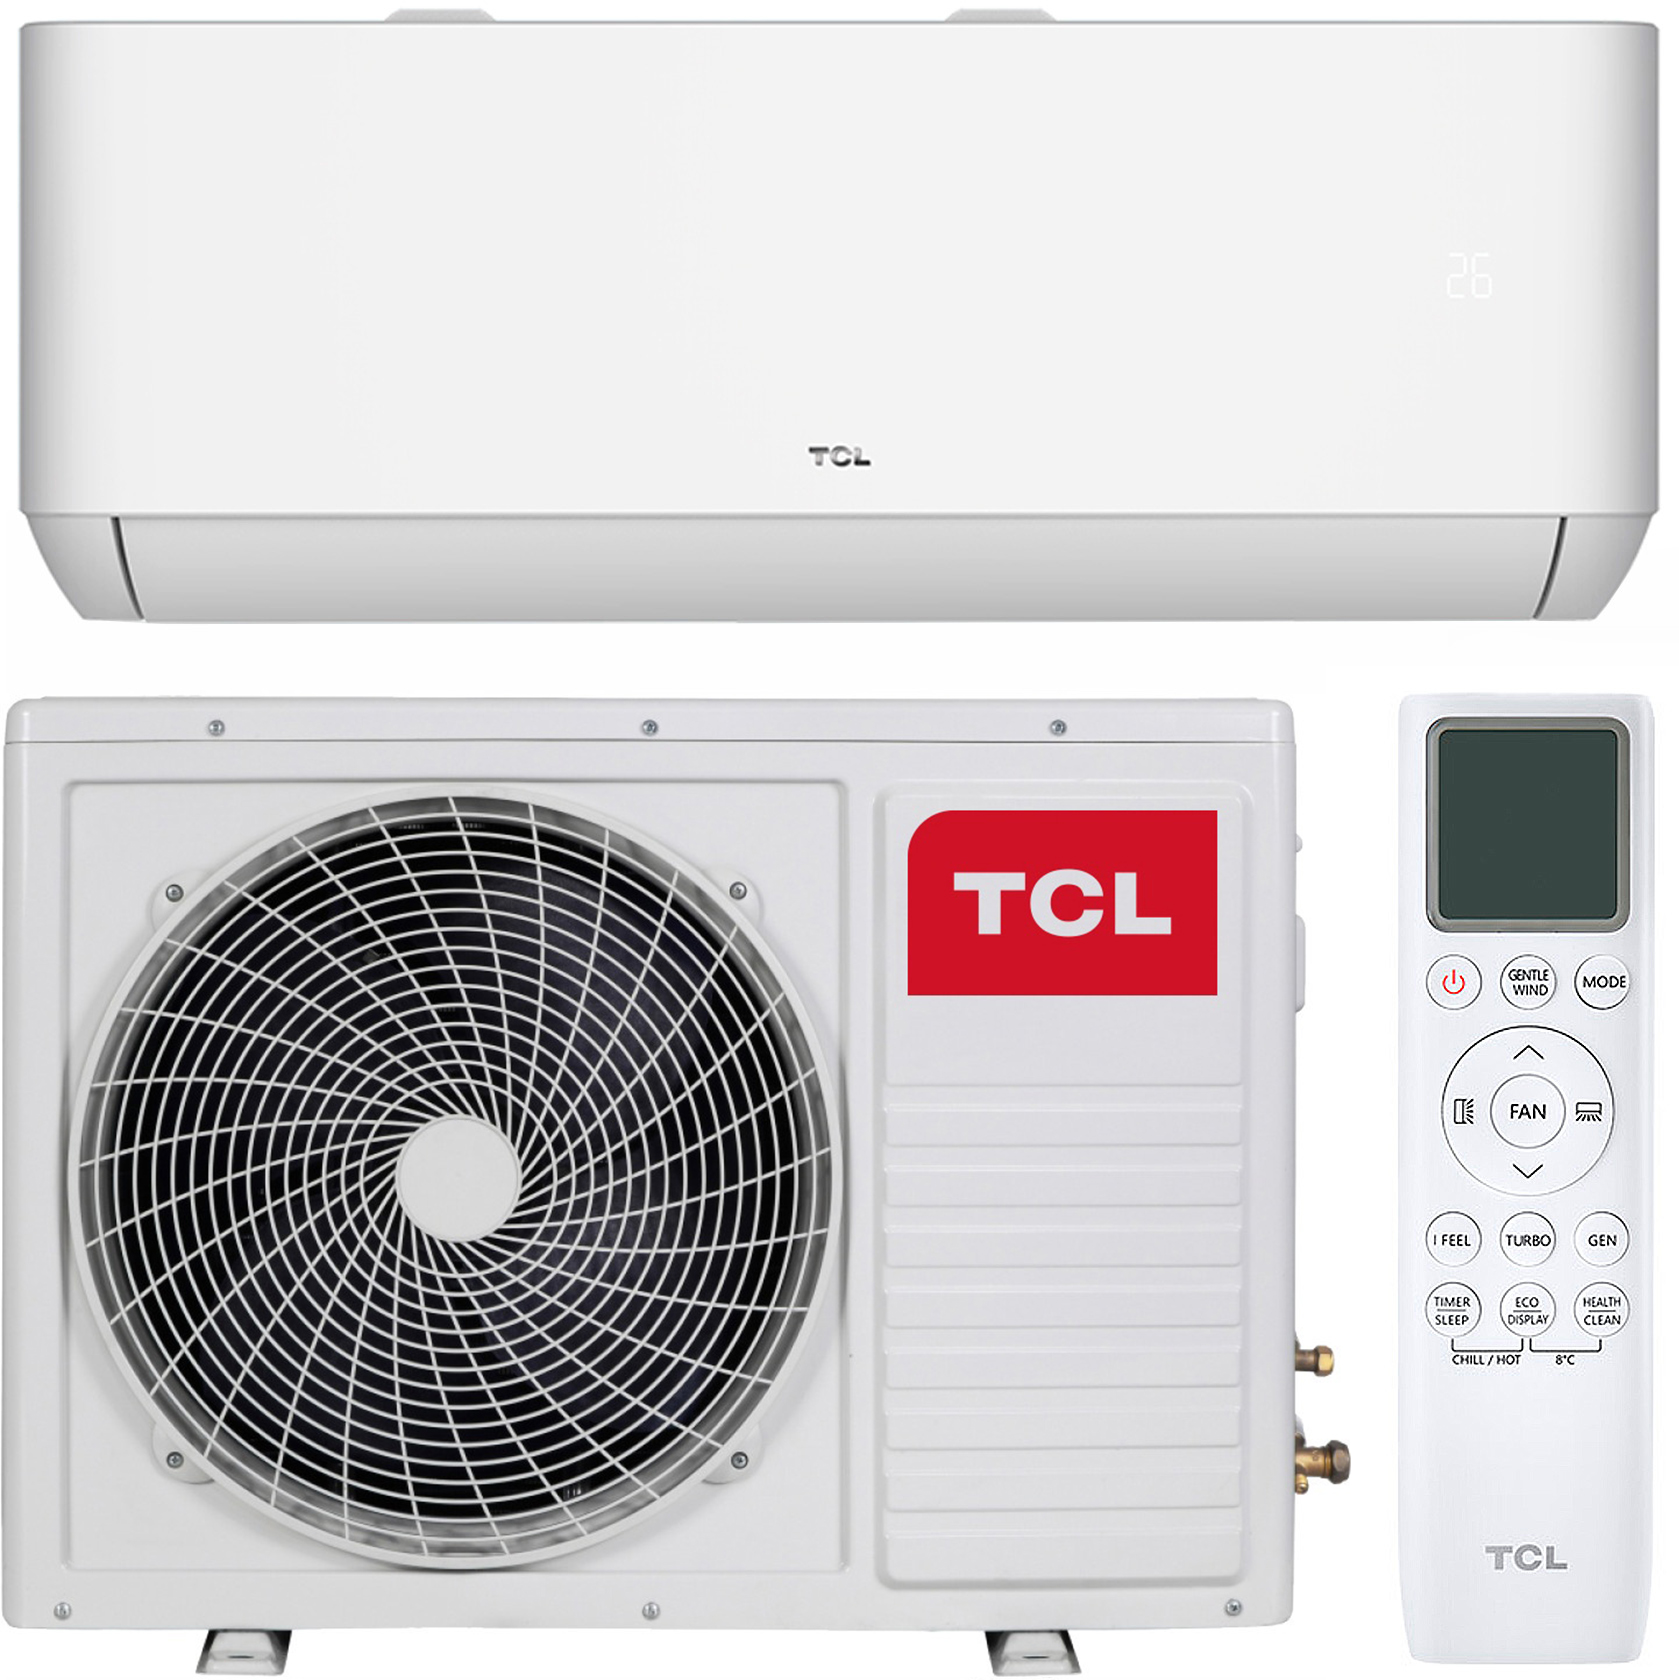 Купить кондиционер tcl с обогревом TCL Ocarina TAC-12CHSD/TPG11I Inverter R32 WI-FI в Киеве